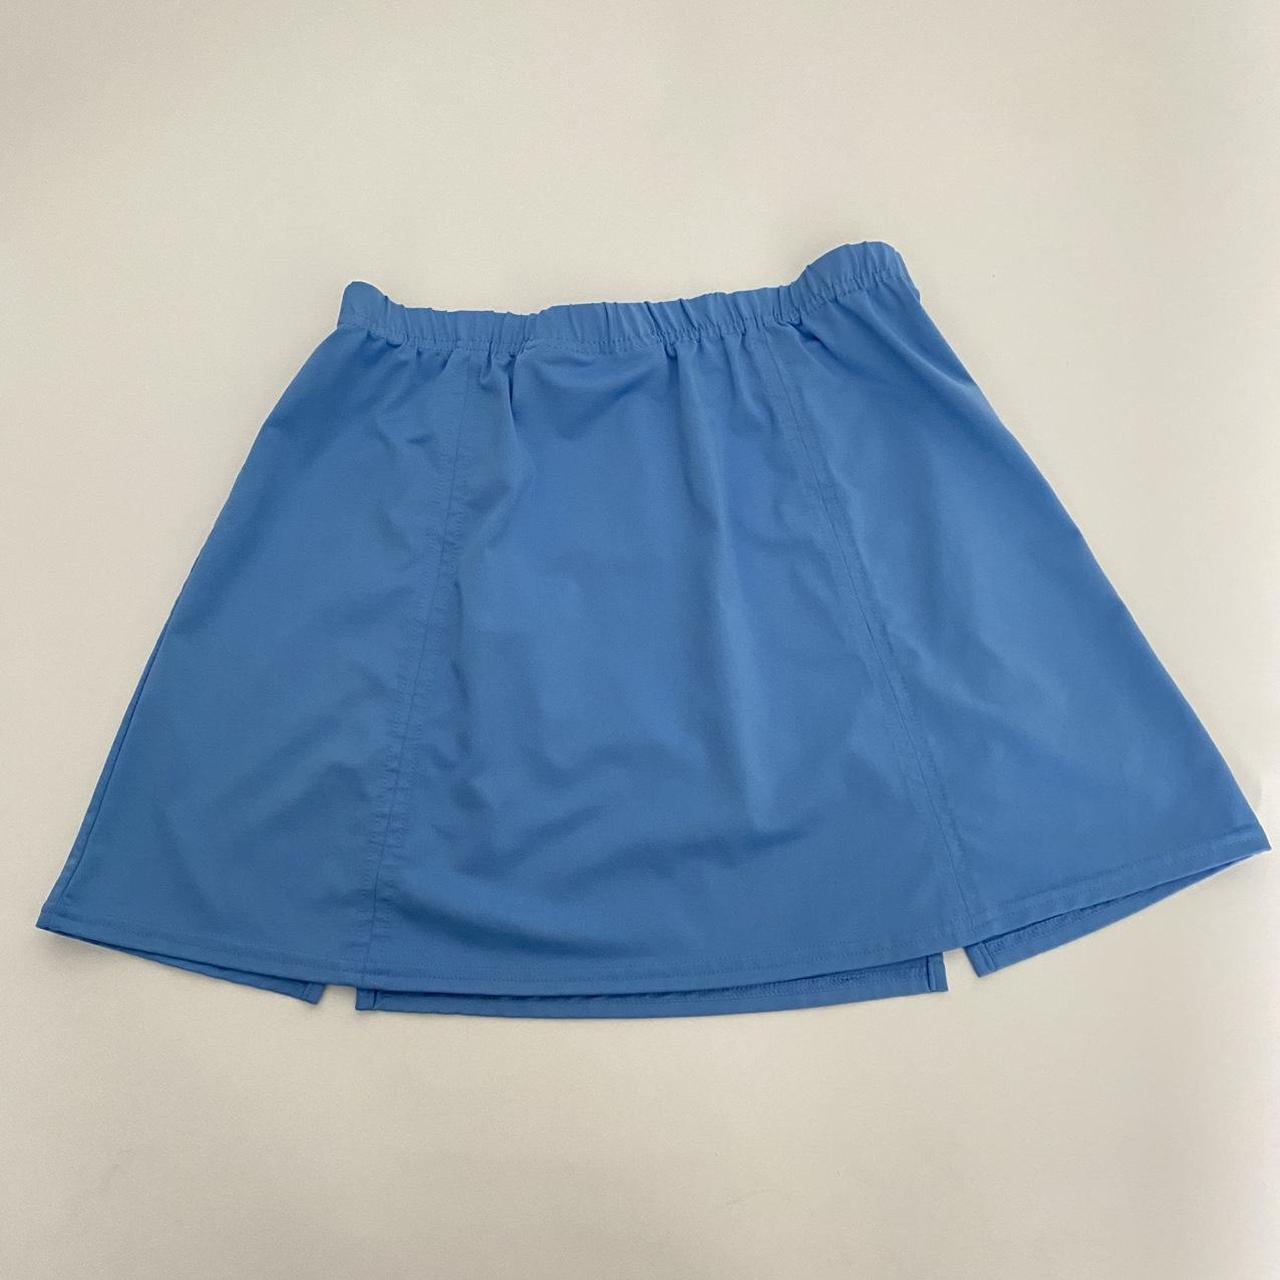 Bollé Women's Blue Skirt (6)